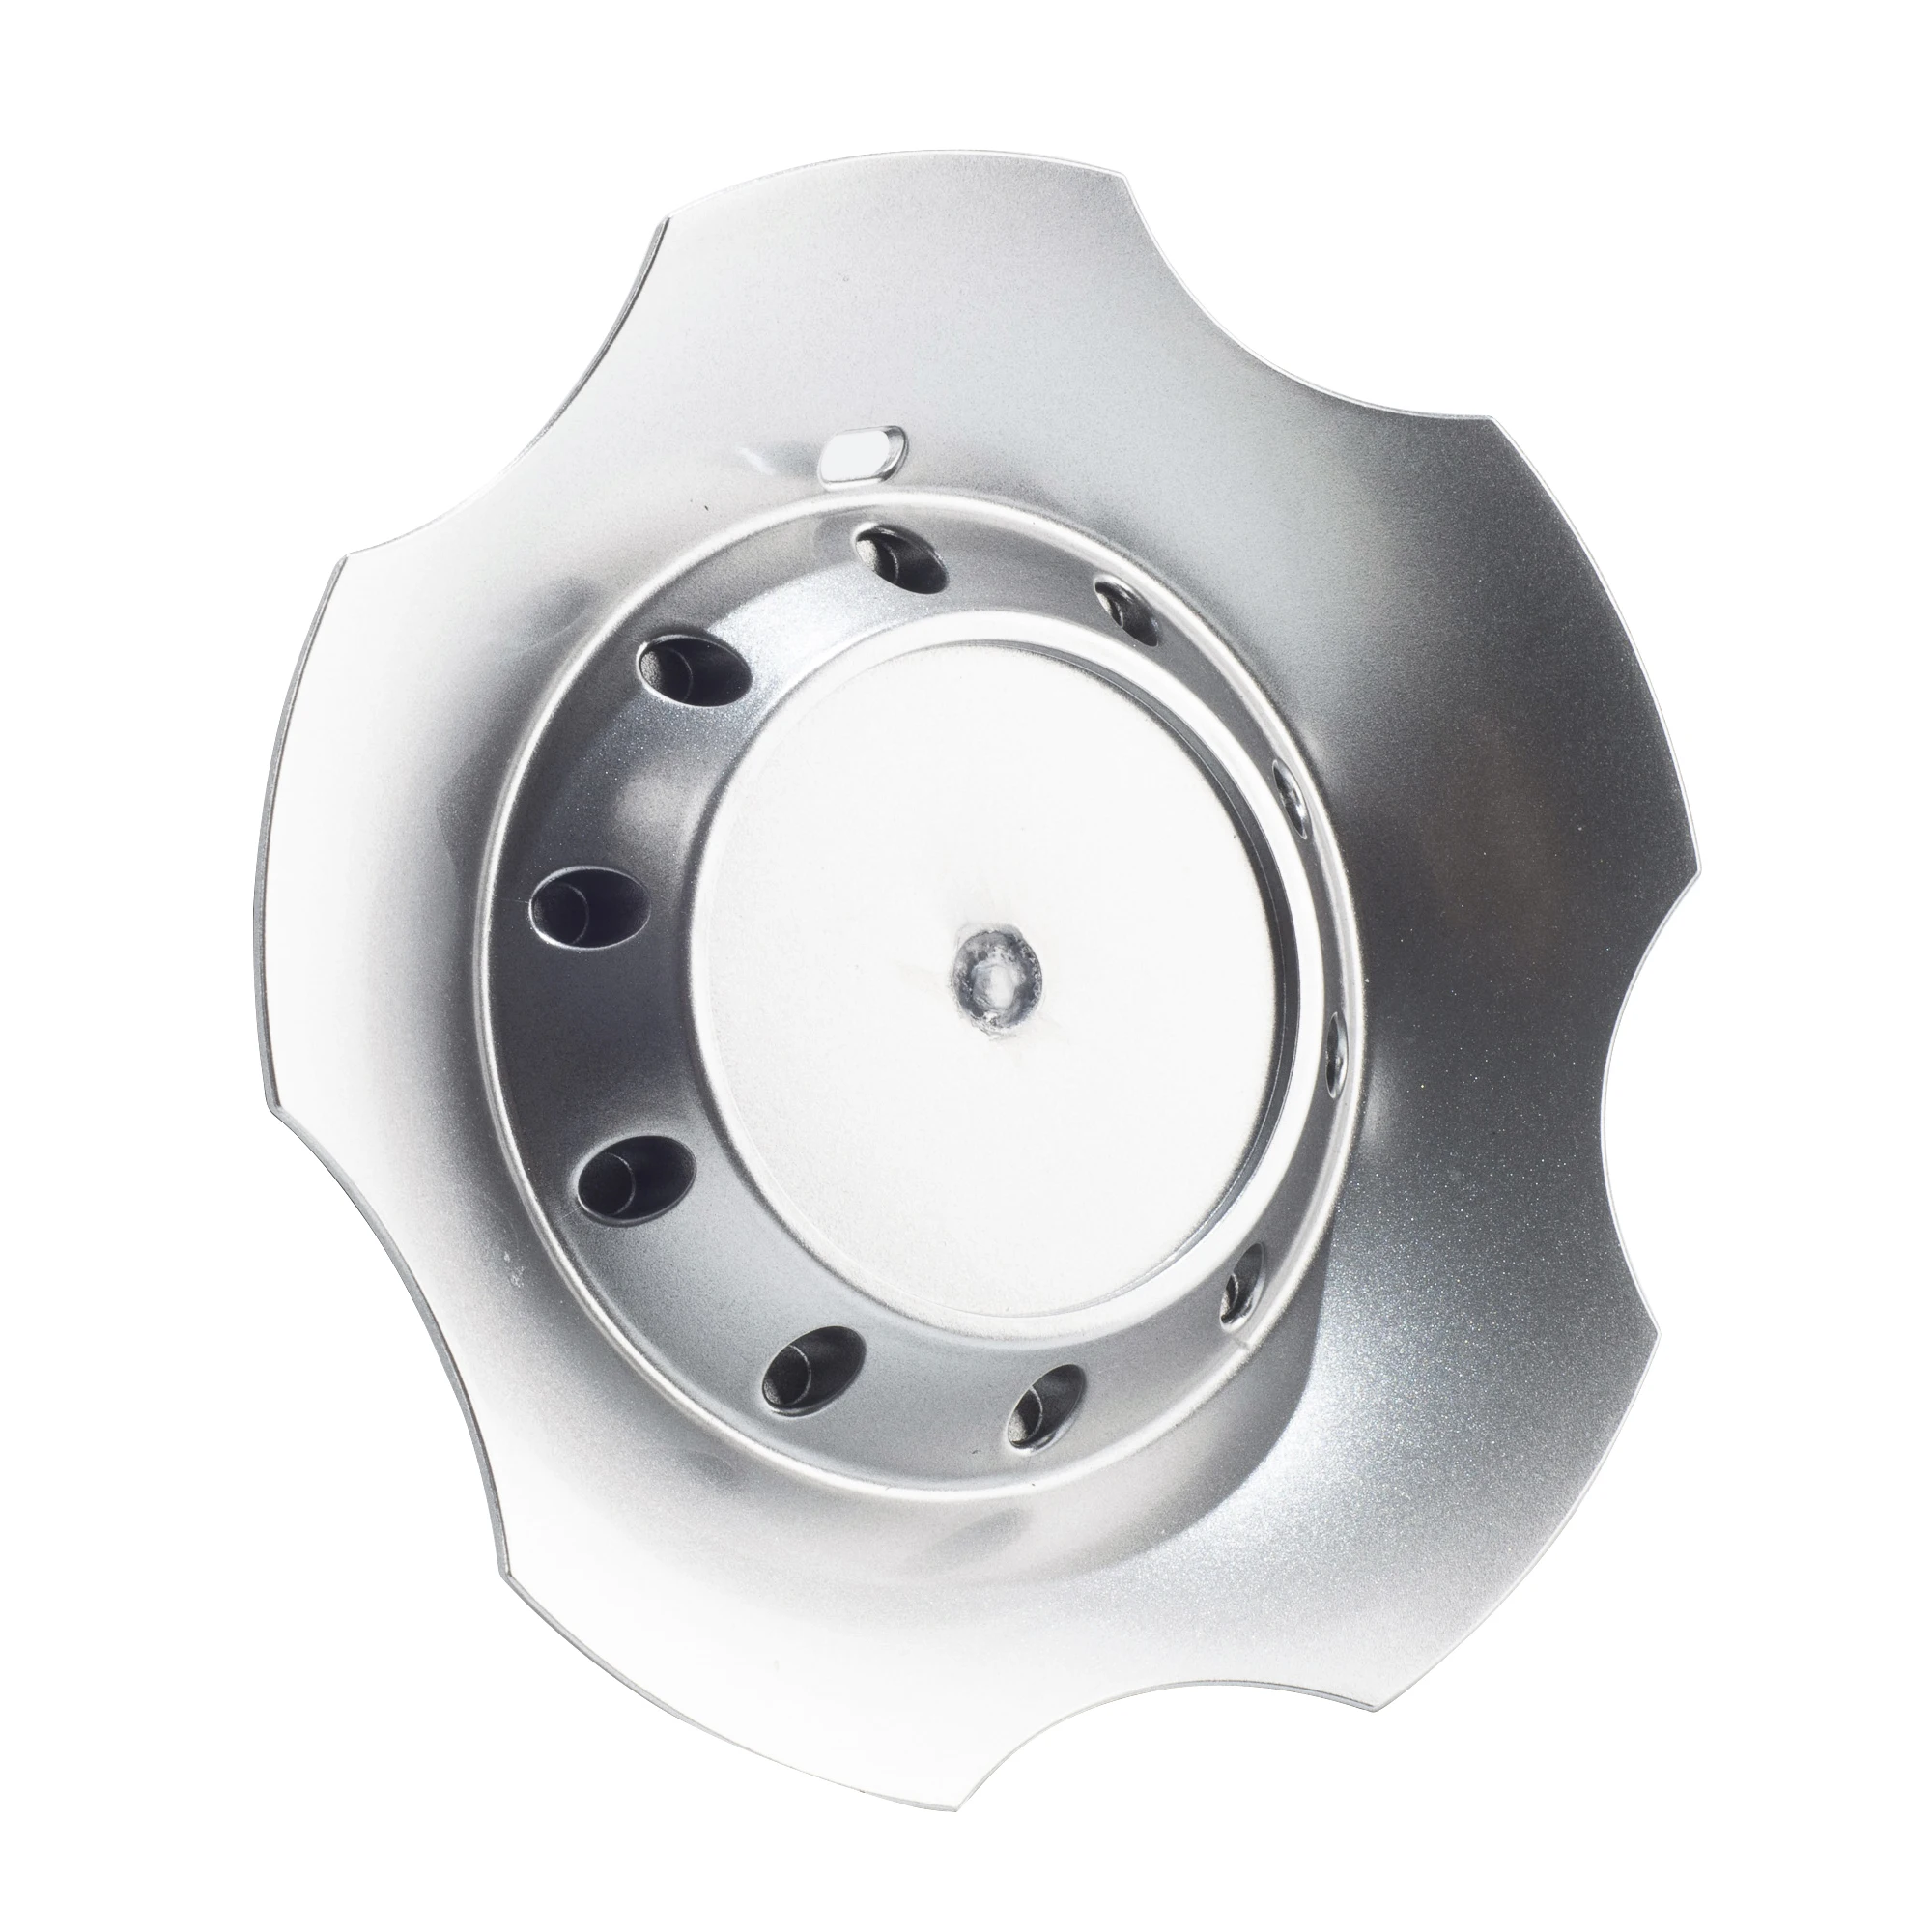 Rhino Tuning 1шт/4шт 160 мм (6,30 дюйма) (+ -1 мм)/58,5 мм (2,30 дюйма) (+ -1 мм) Автомобильные Центральные Колпачки для легкосплавных дисков, Детали для Ремонта автомобильных Ободов